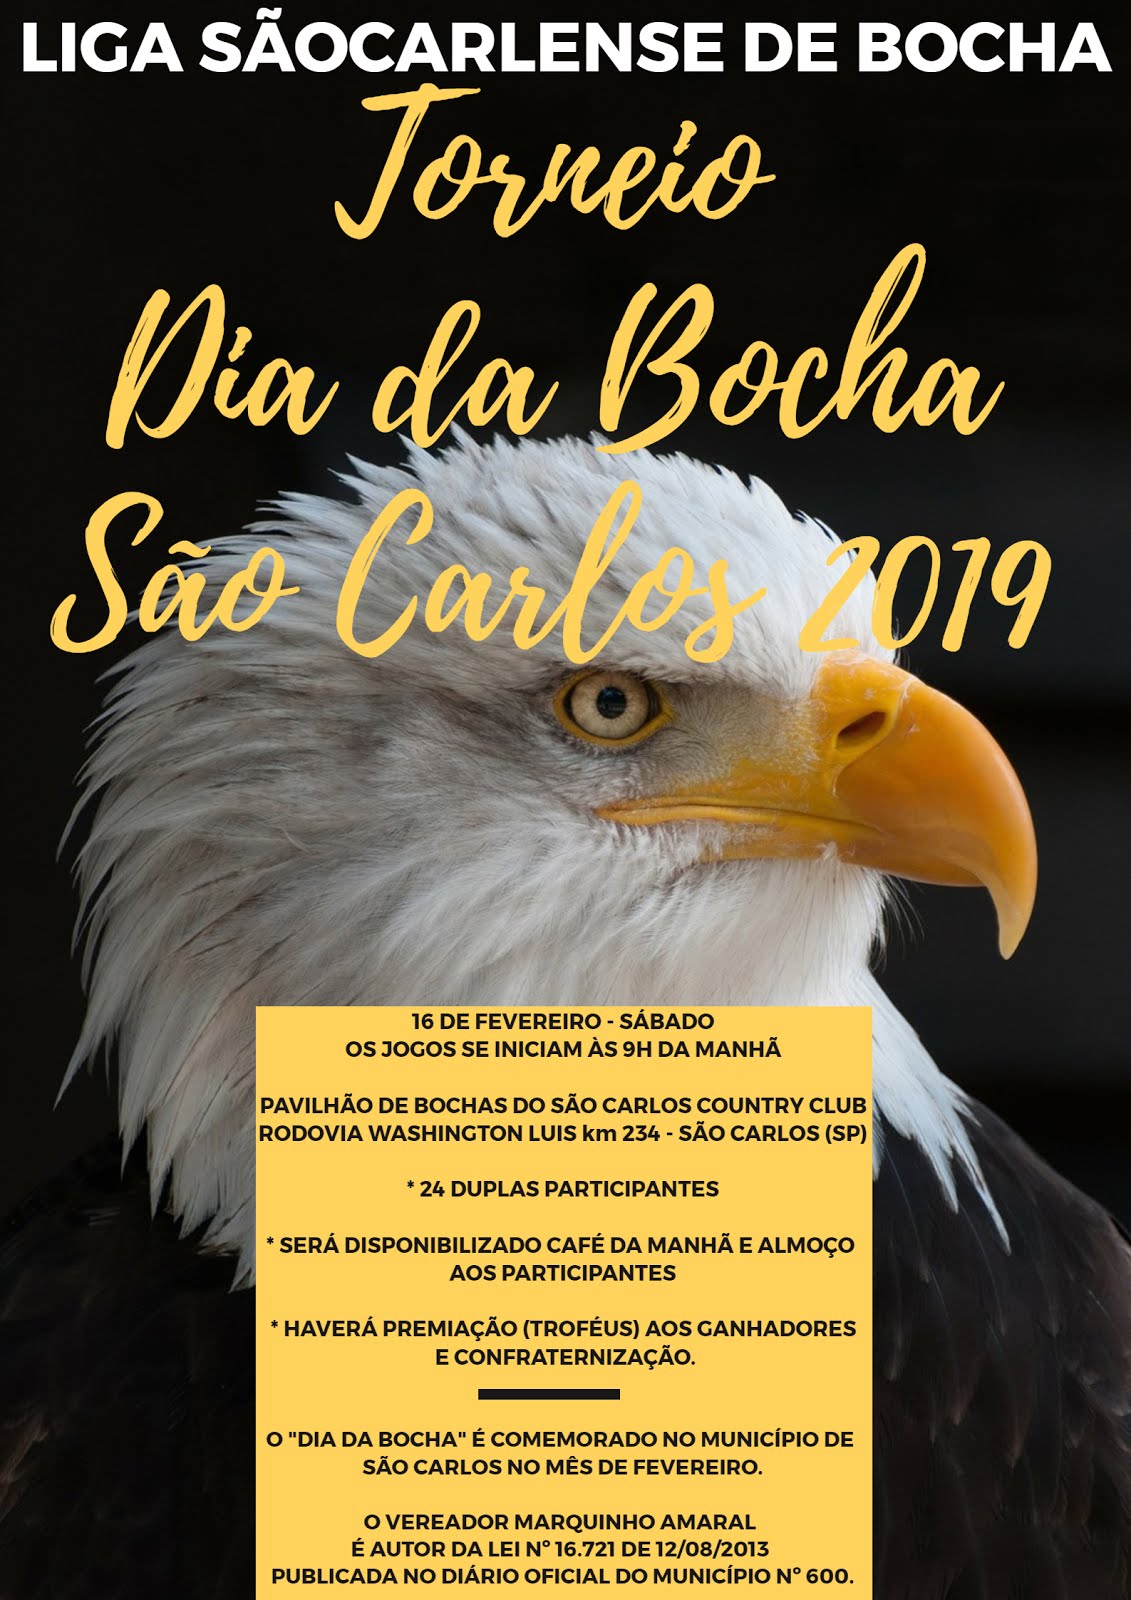 TORNEIO DIA DA BOCHA EM SÃO CARLOS - 16 FEVEREIRO 2019